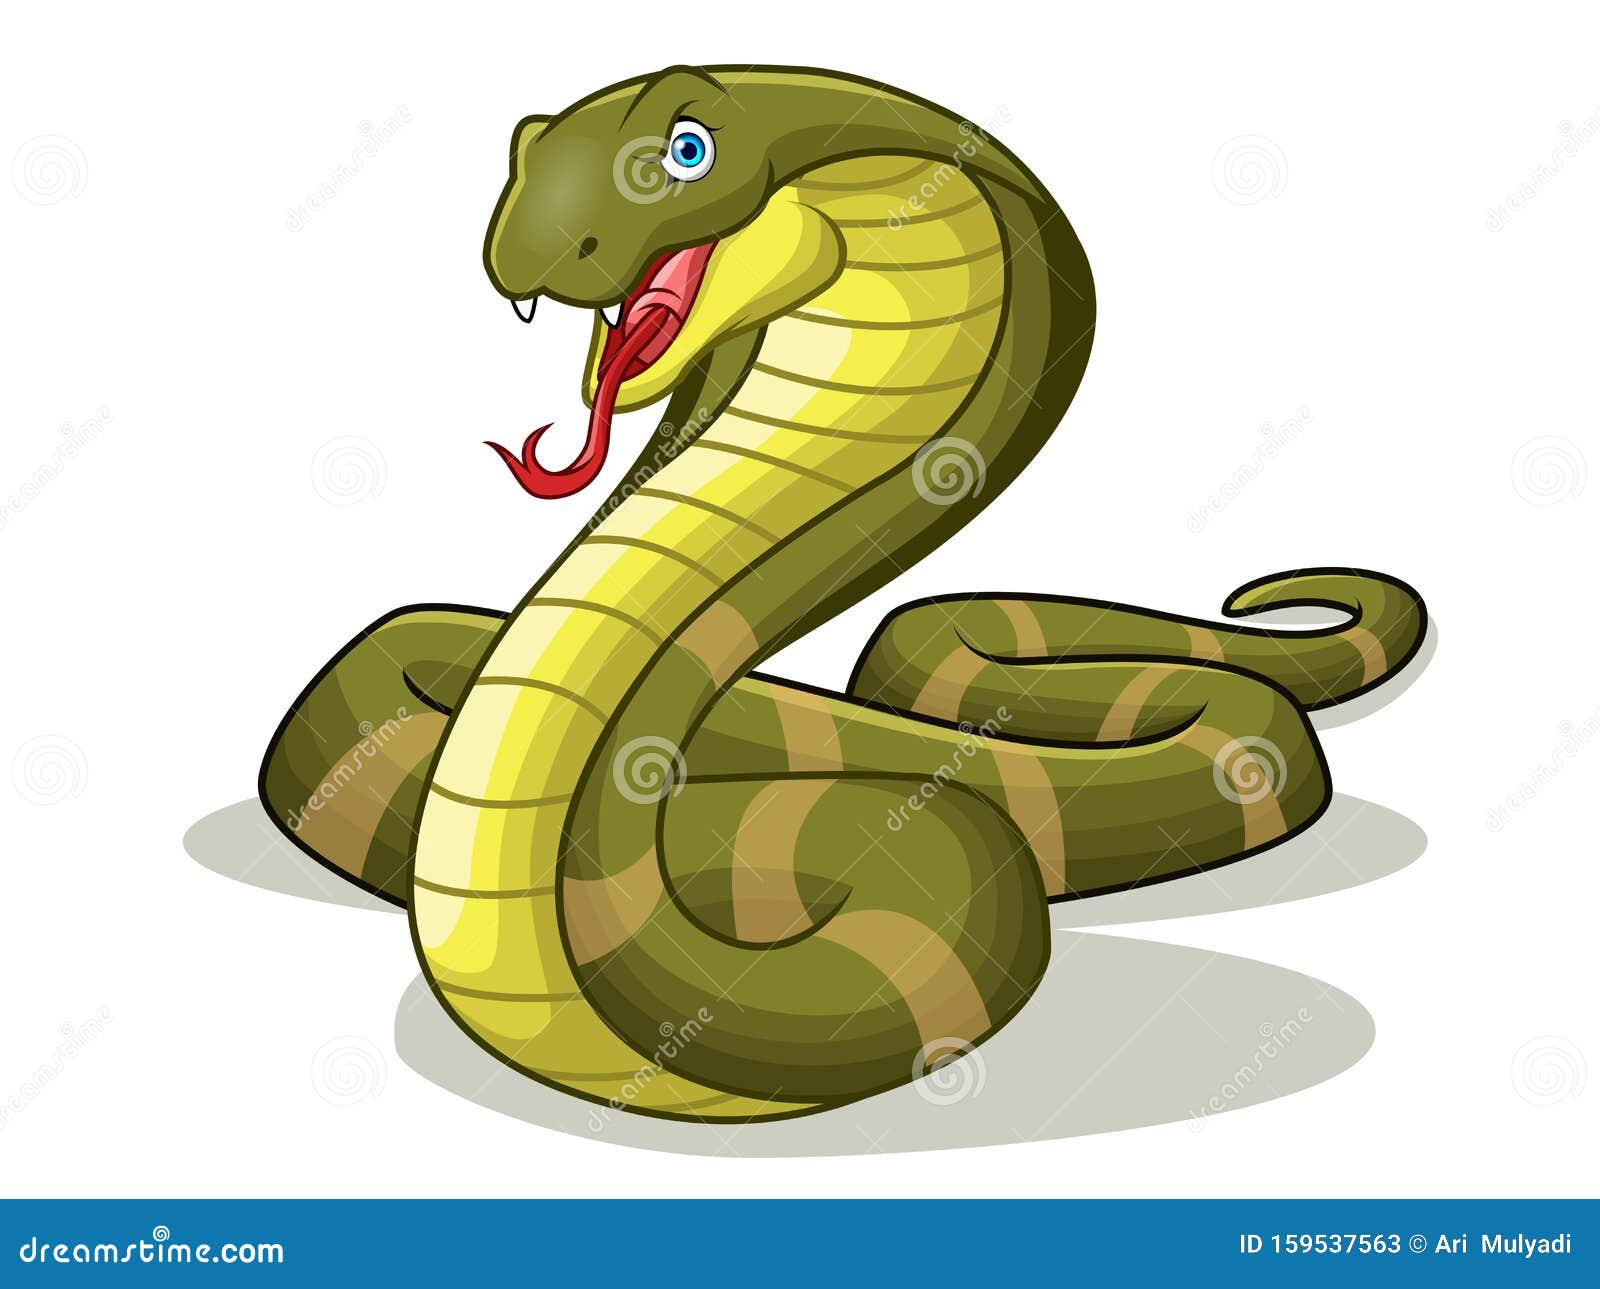 A Cartoon of King Cobra or Venomous Snake Angry. Illustration Stock  Illustration - Illustration of bite, danger: 159537563